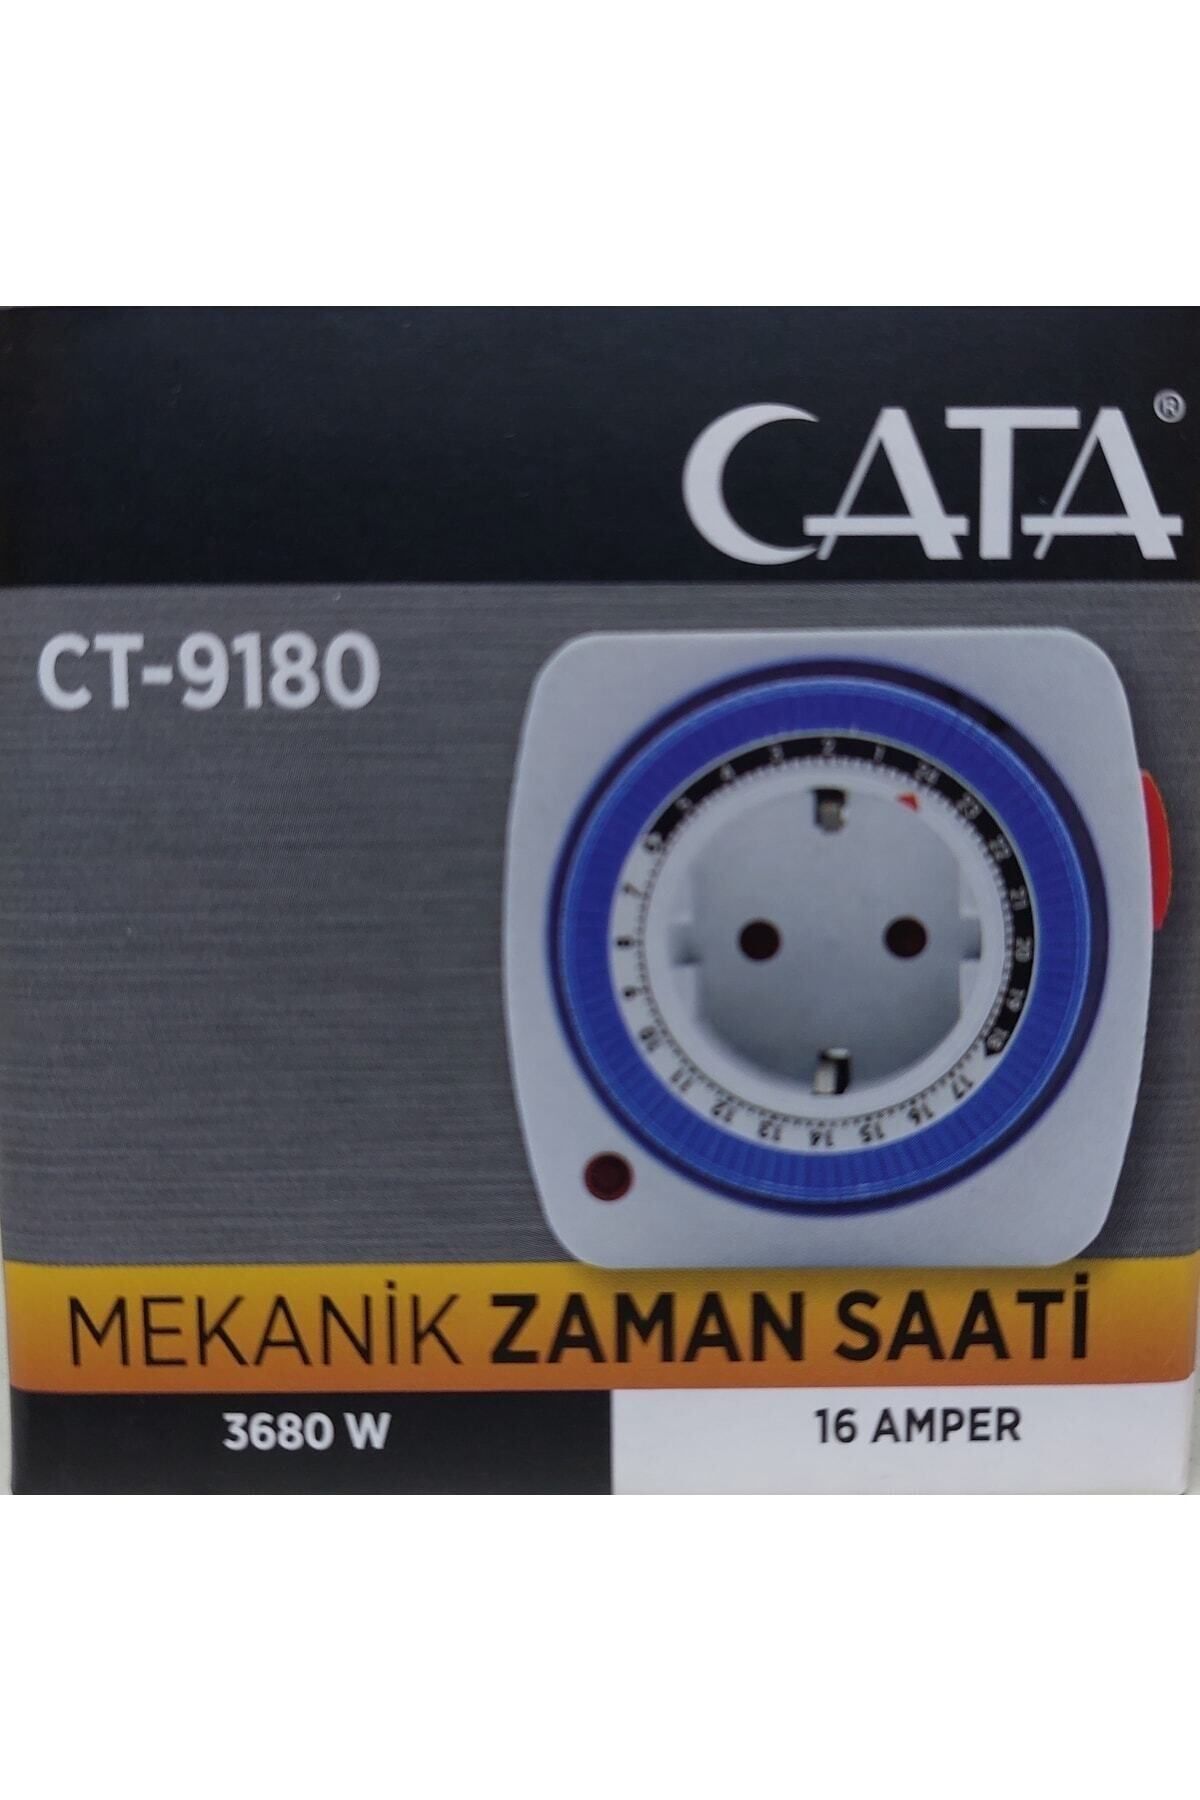 Cata Ct-9180 Zaman Ayarlı Priz Mekanik Ayarlanabilir Timer Saati (16,00 YA KADAR AYNI GÜN KARGO)